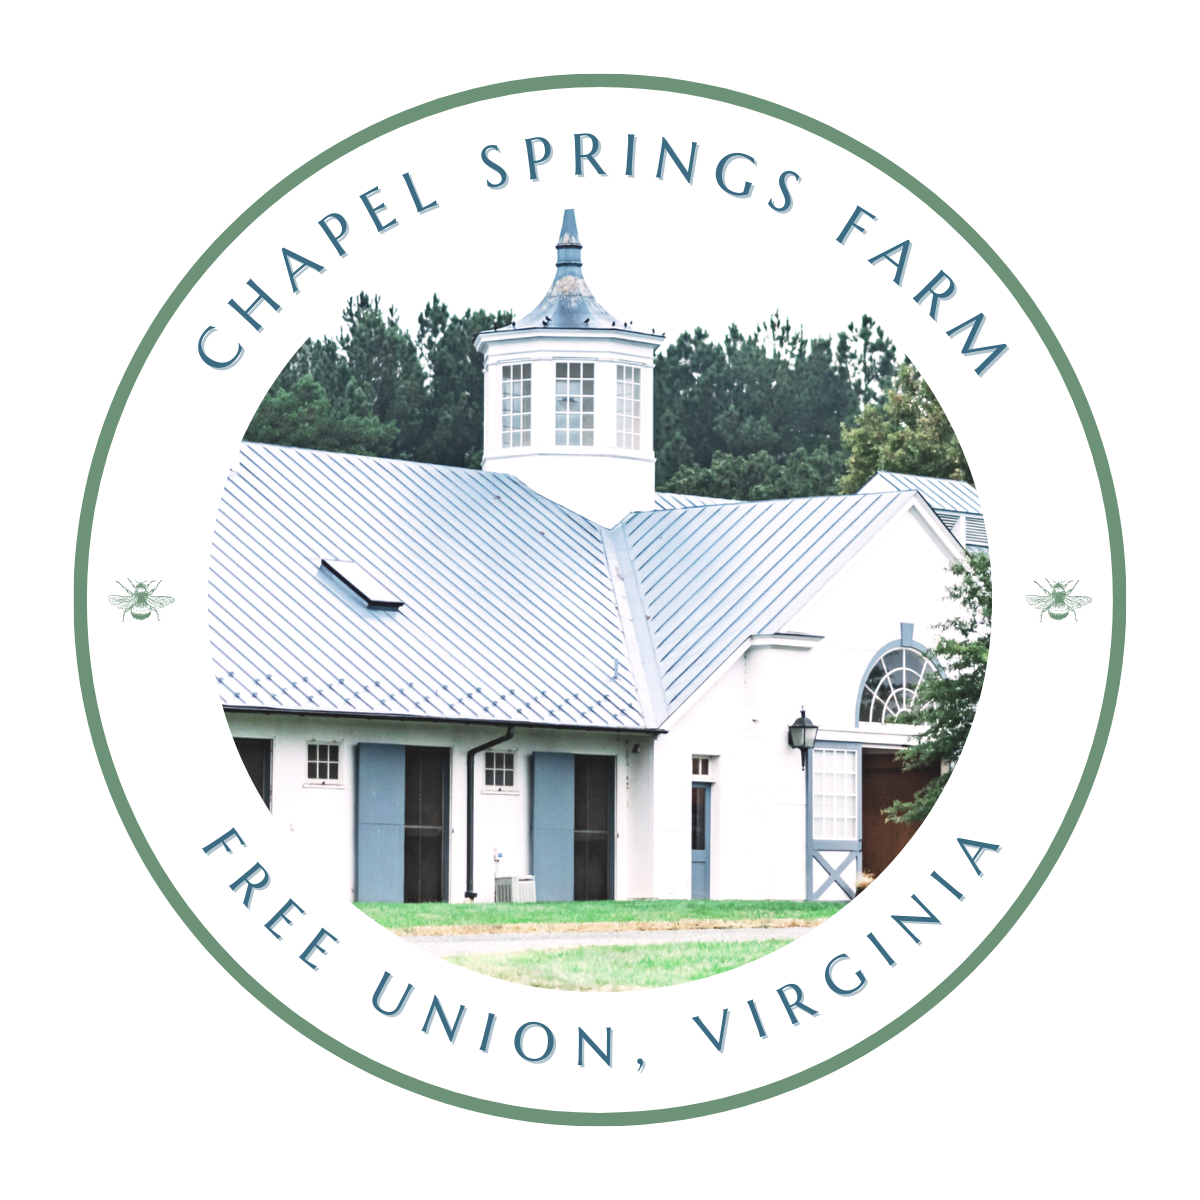 Chapel Springs Farm